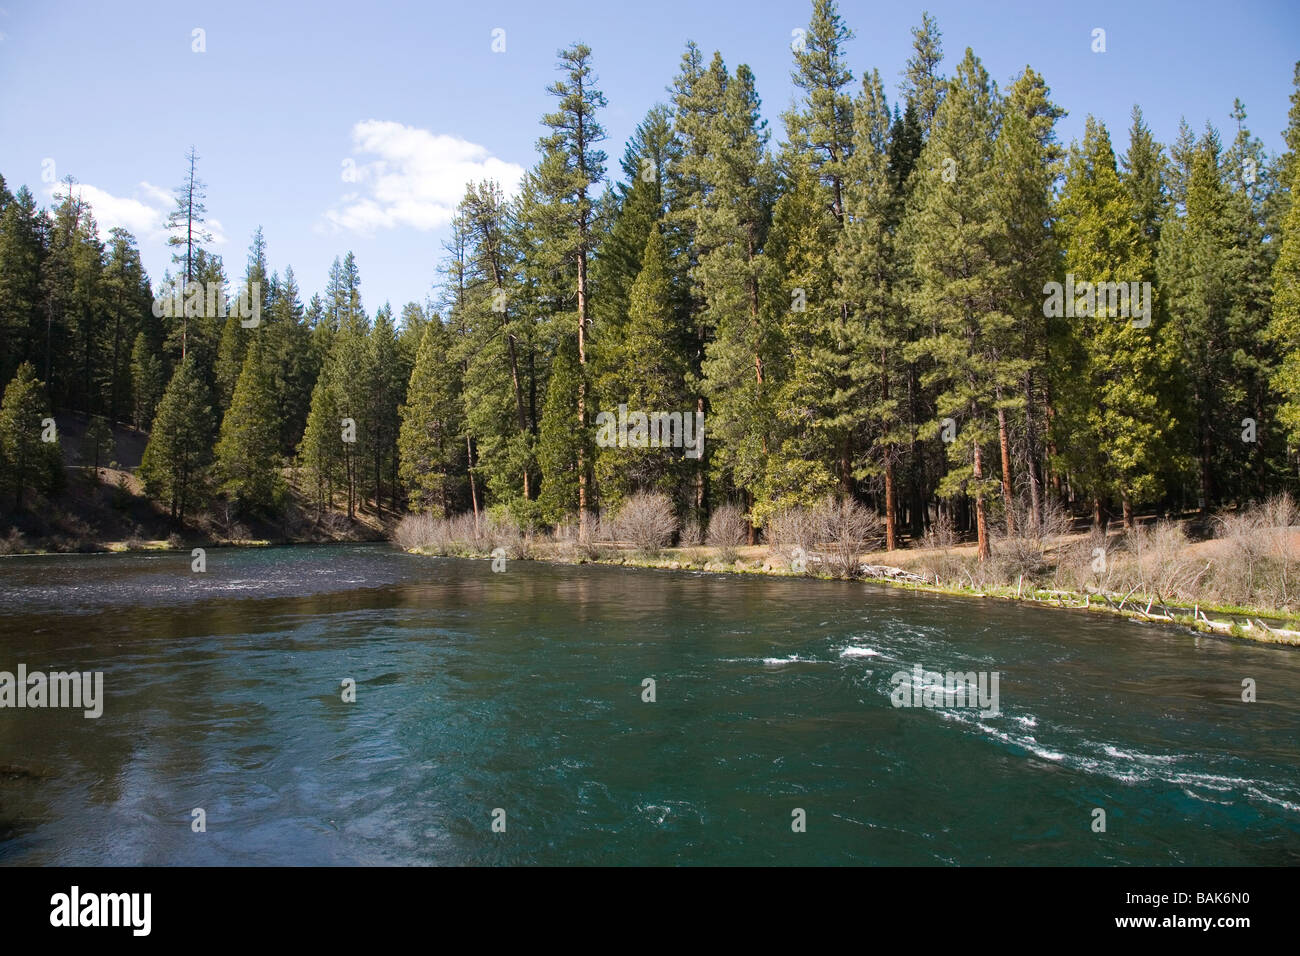 USA OREGON vue du pin ponderosa arbres le long de la rivière Metolius dans les montagnes Cascades du centre de l'Oregon Banque D'Images